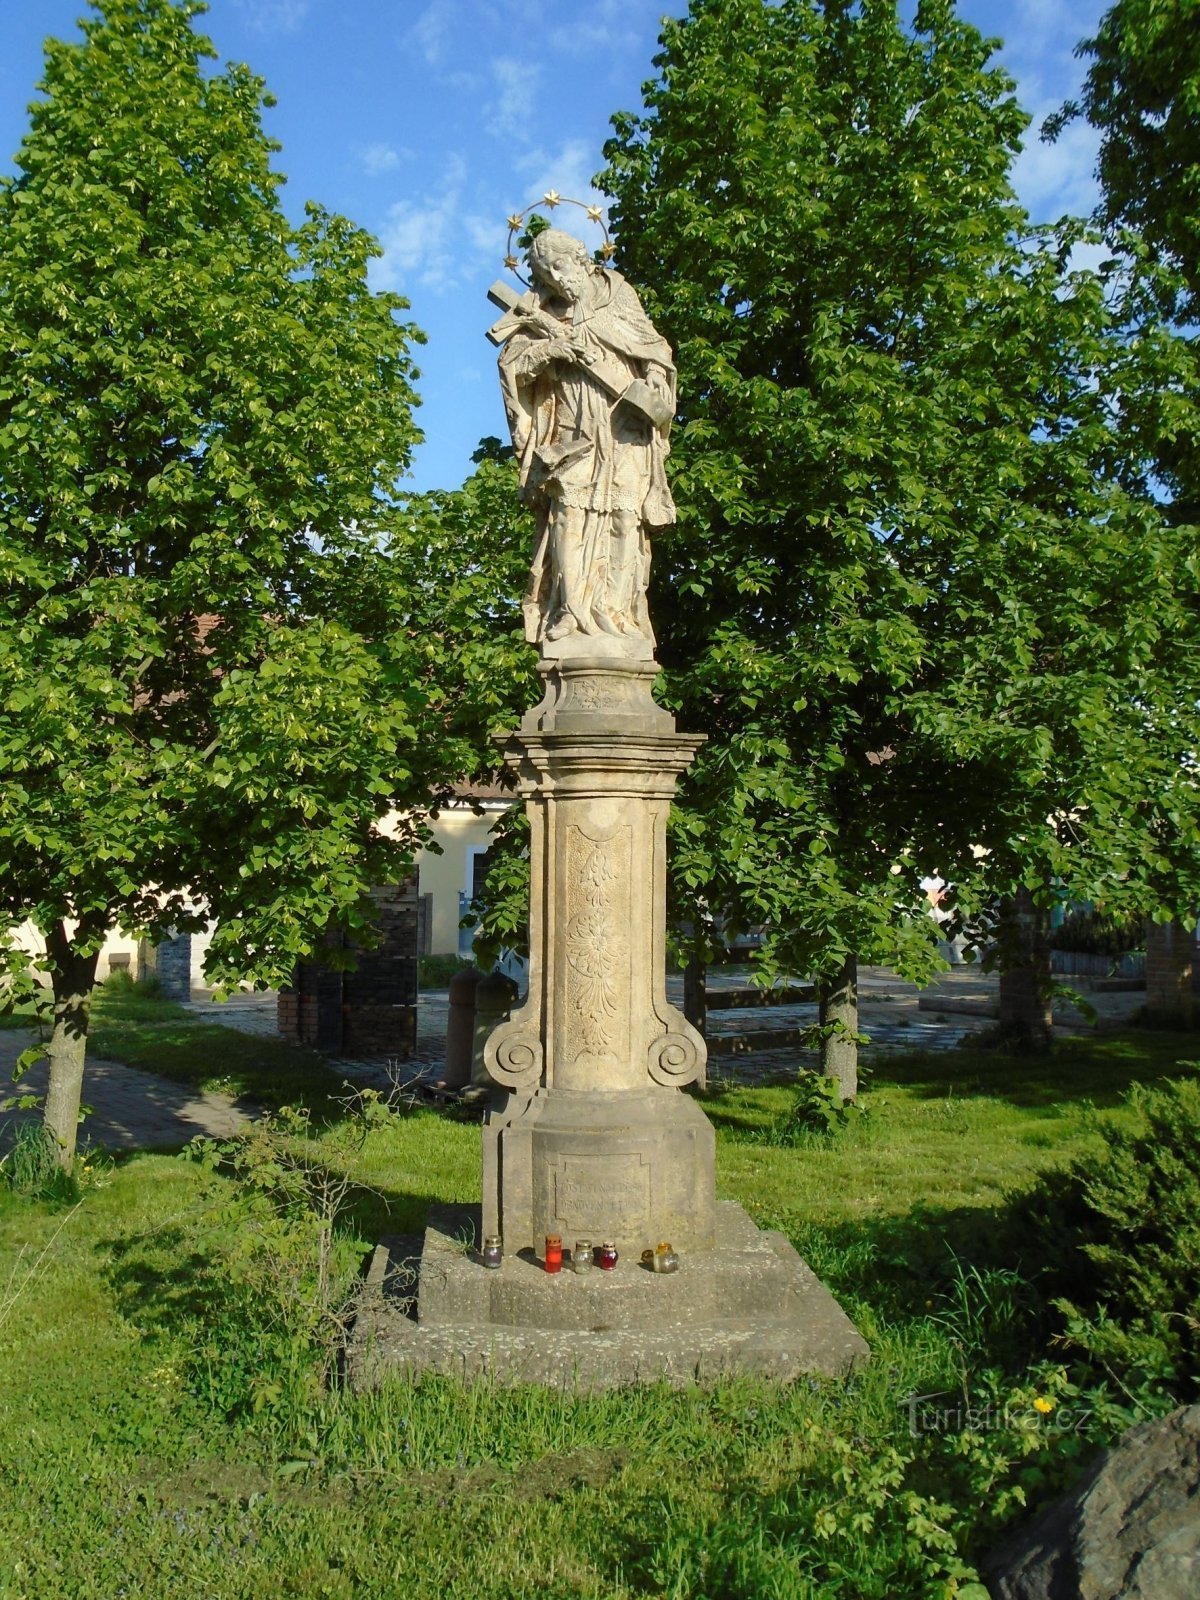 szobor Szent Nepomuck János Správčicében (Hradec Králové, 1.5.2018. május XNUMX.)